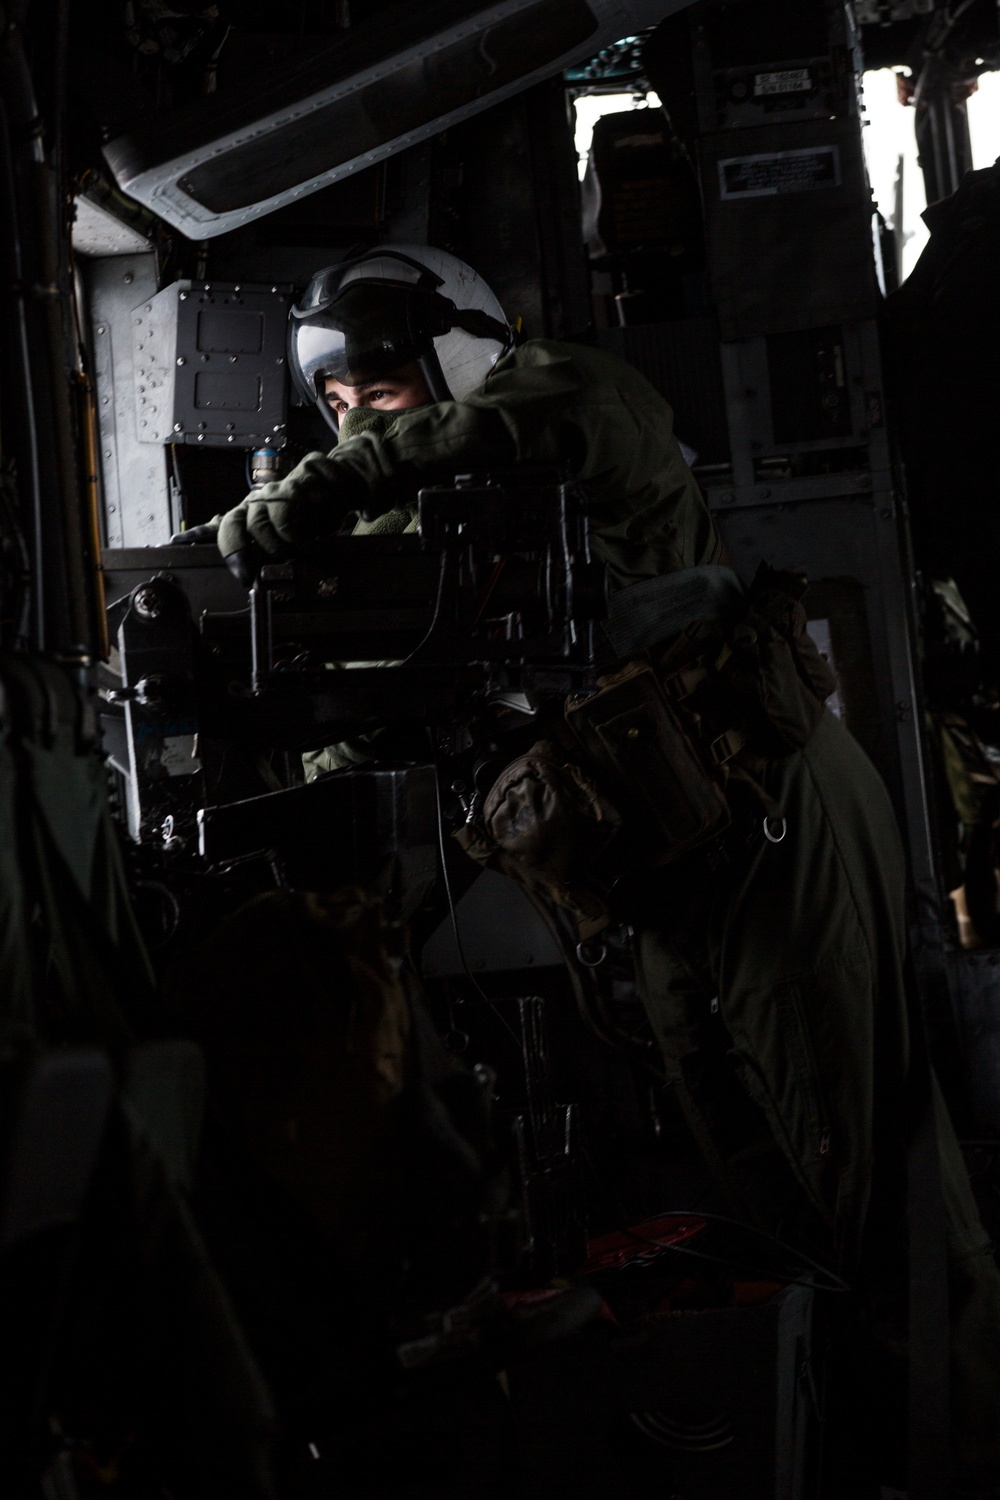 HMH-464 Marines Conduct Flight Operations during Exercise Frigid Condor